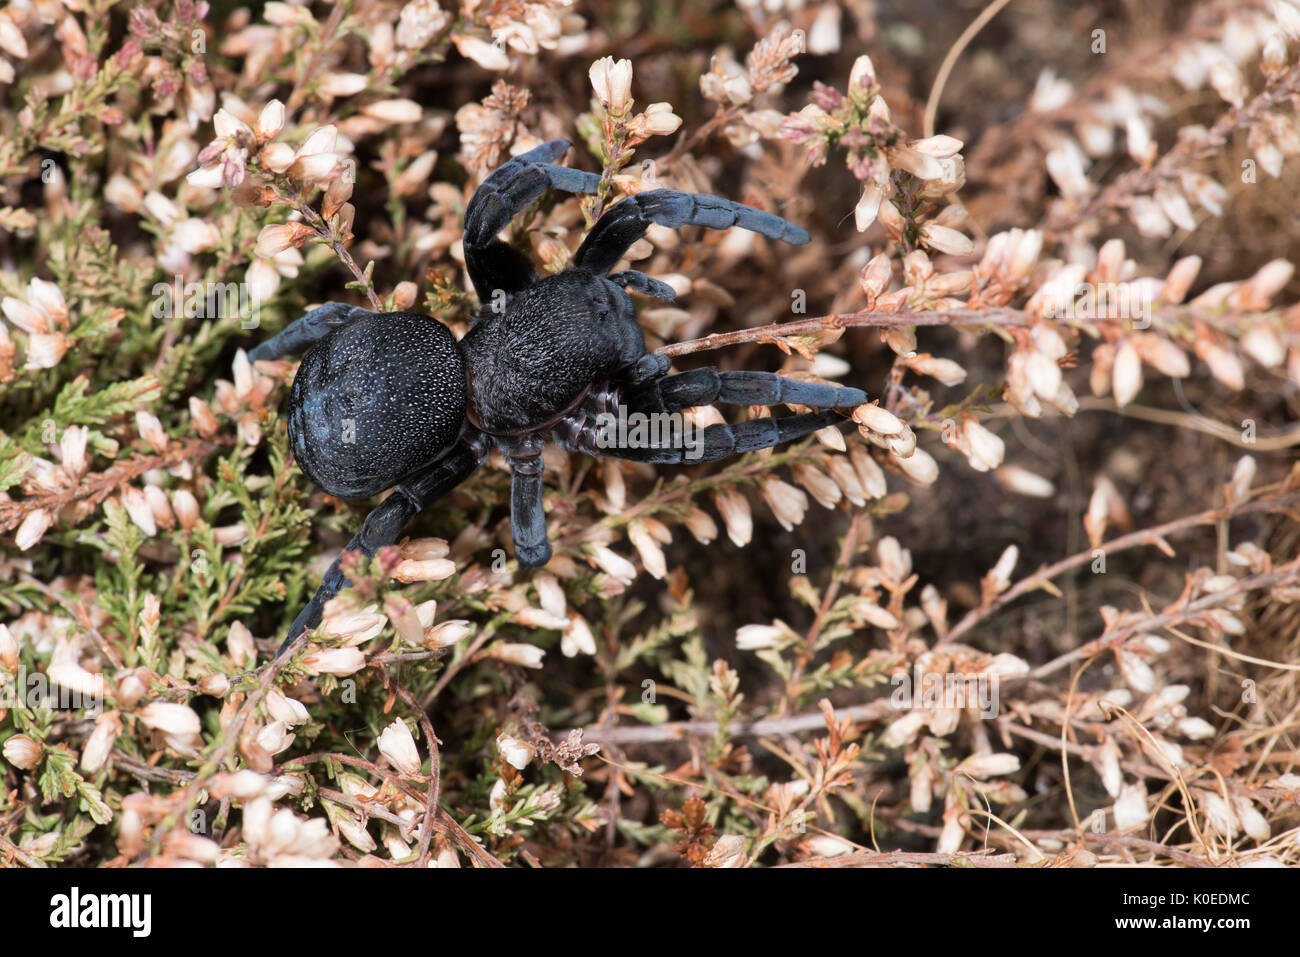 Ladybird Spider, Female, Eresus walckenaeri, on plant, Eastern Mediterranean Stock Photo